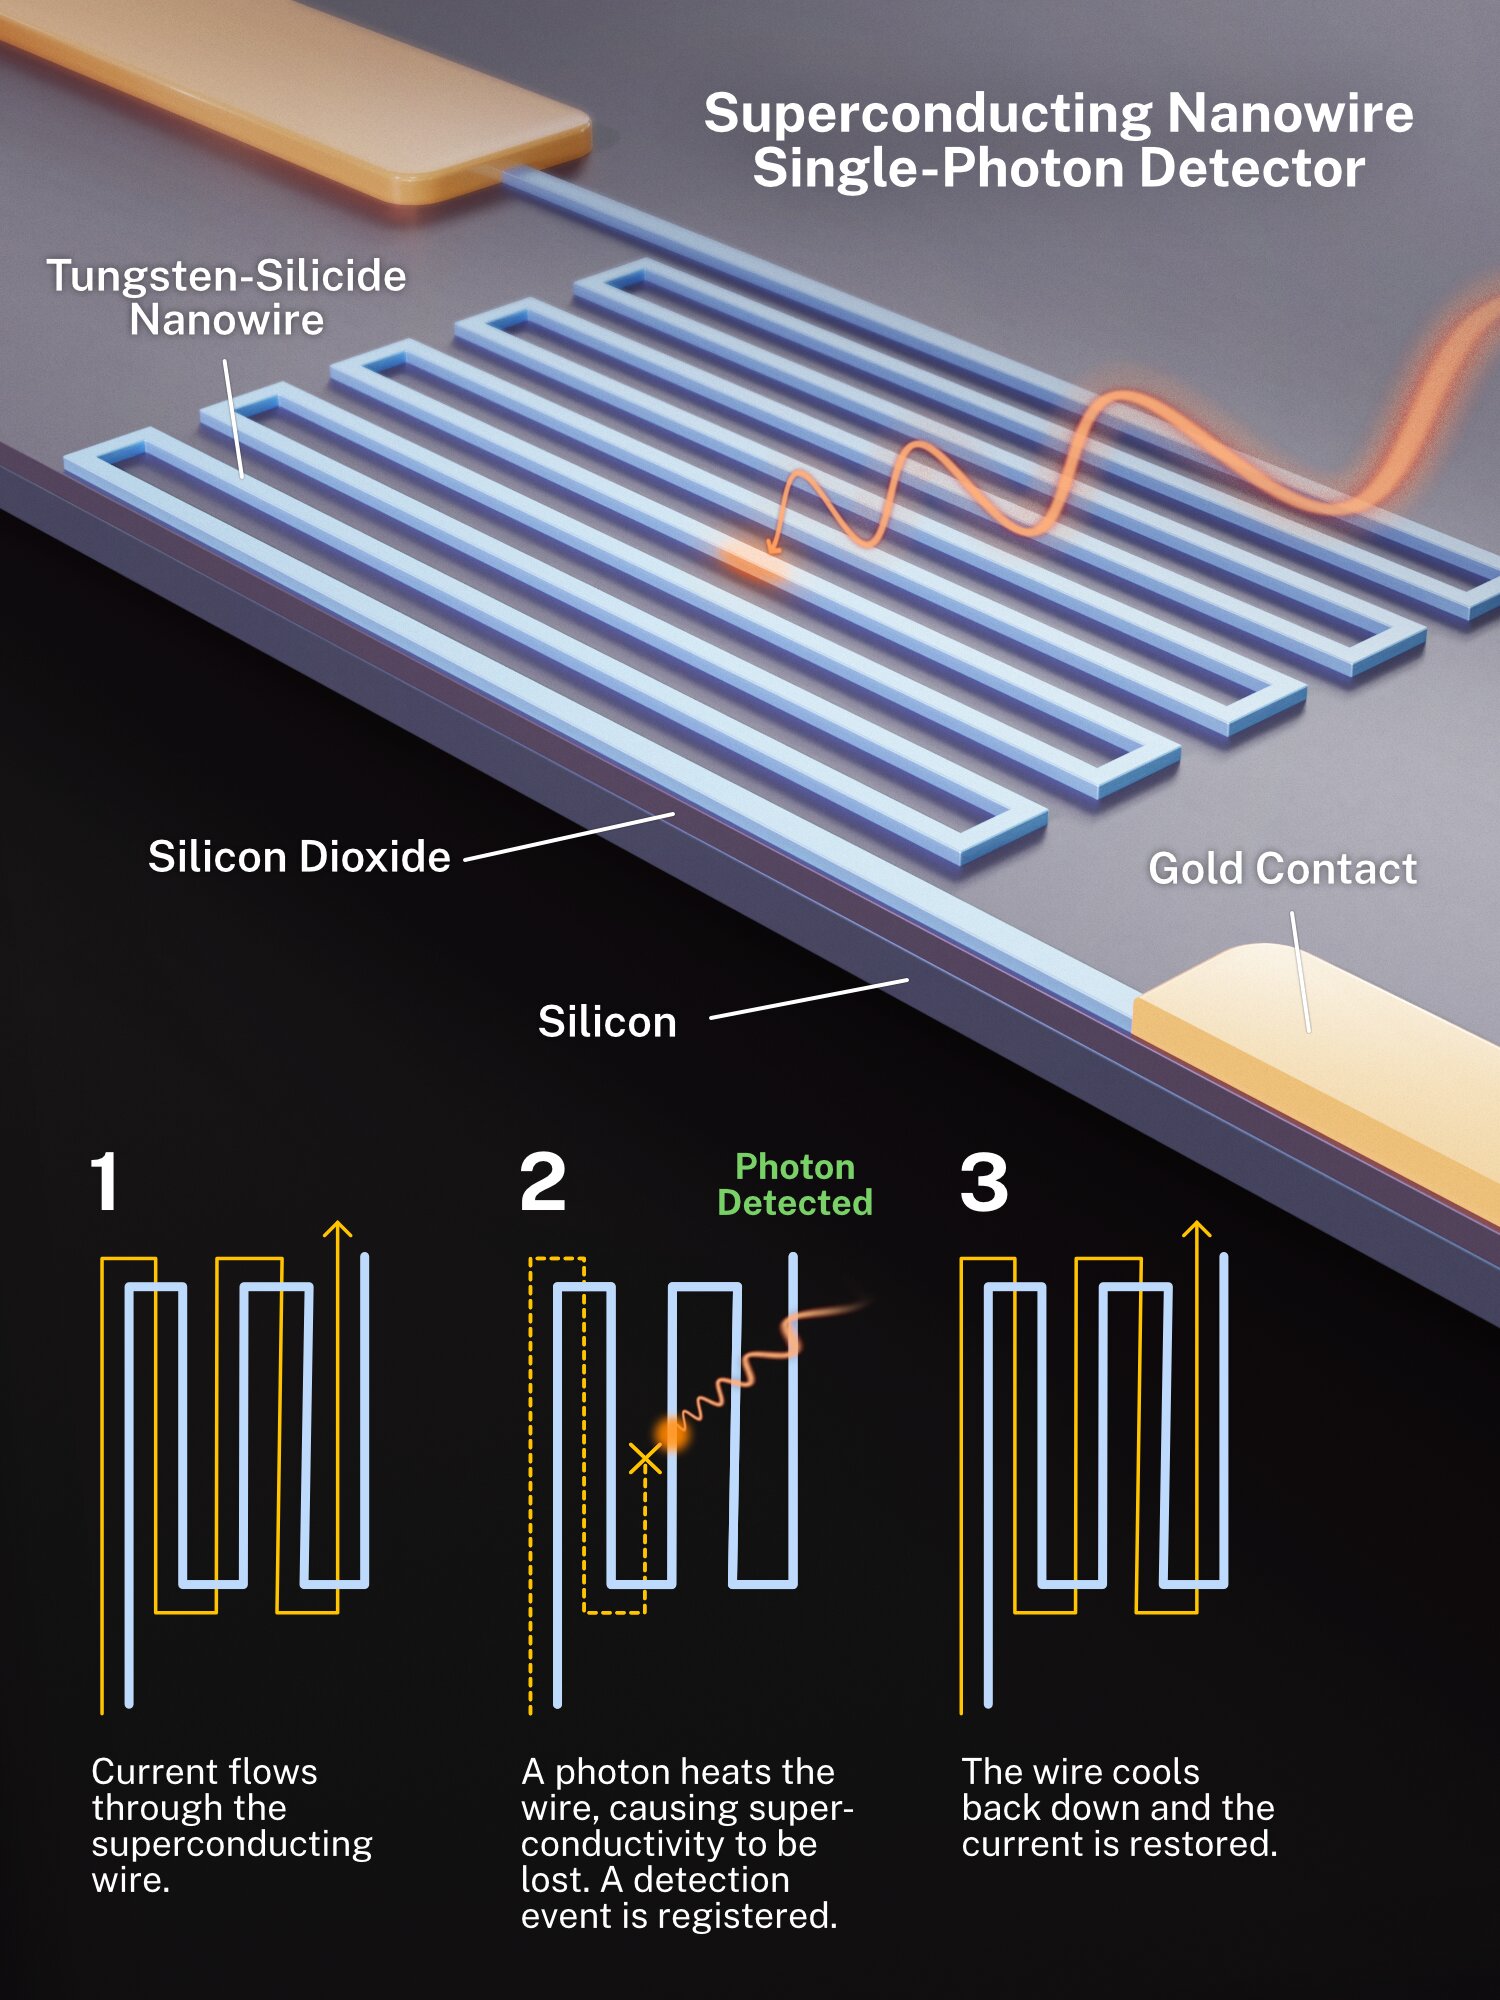 Schema di un generico rivelatore di fotoni a nanofili superconduttori. I fili in questo studio sono stati realizzati interamente in siliciuro di tungsteno, senza contatti in oro. Credito: S. Kelley/NIST